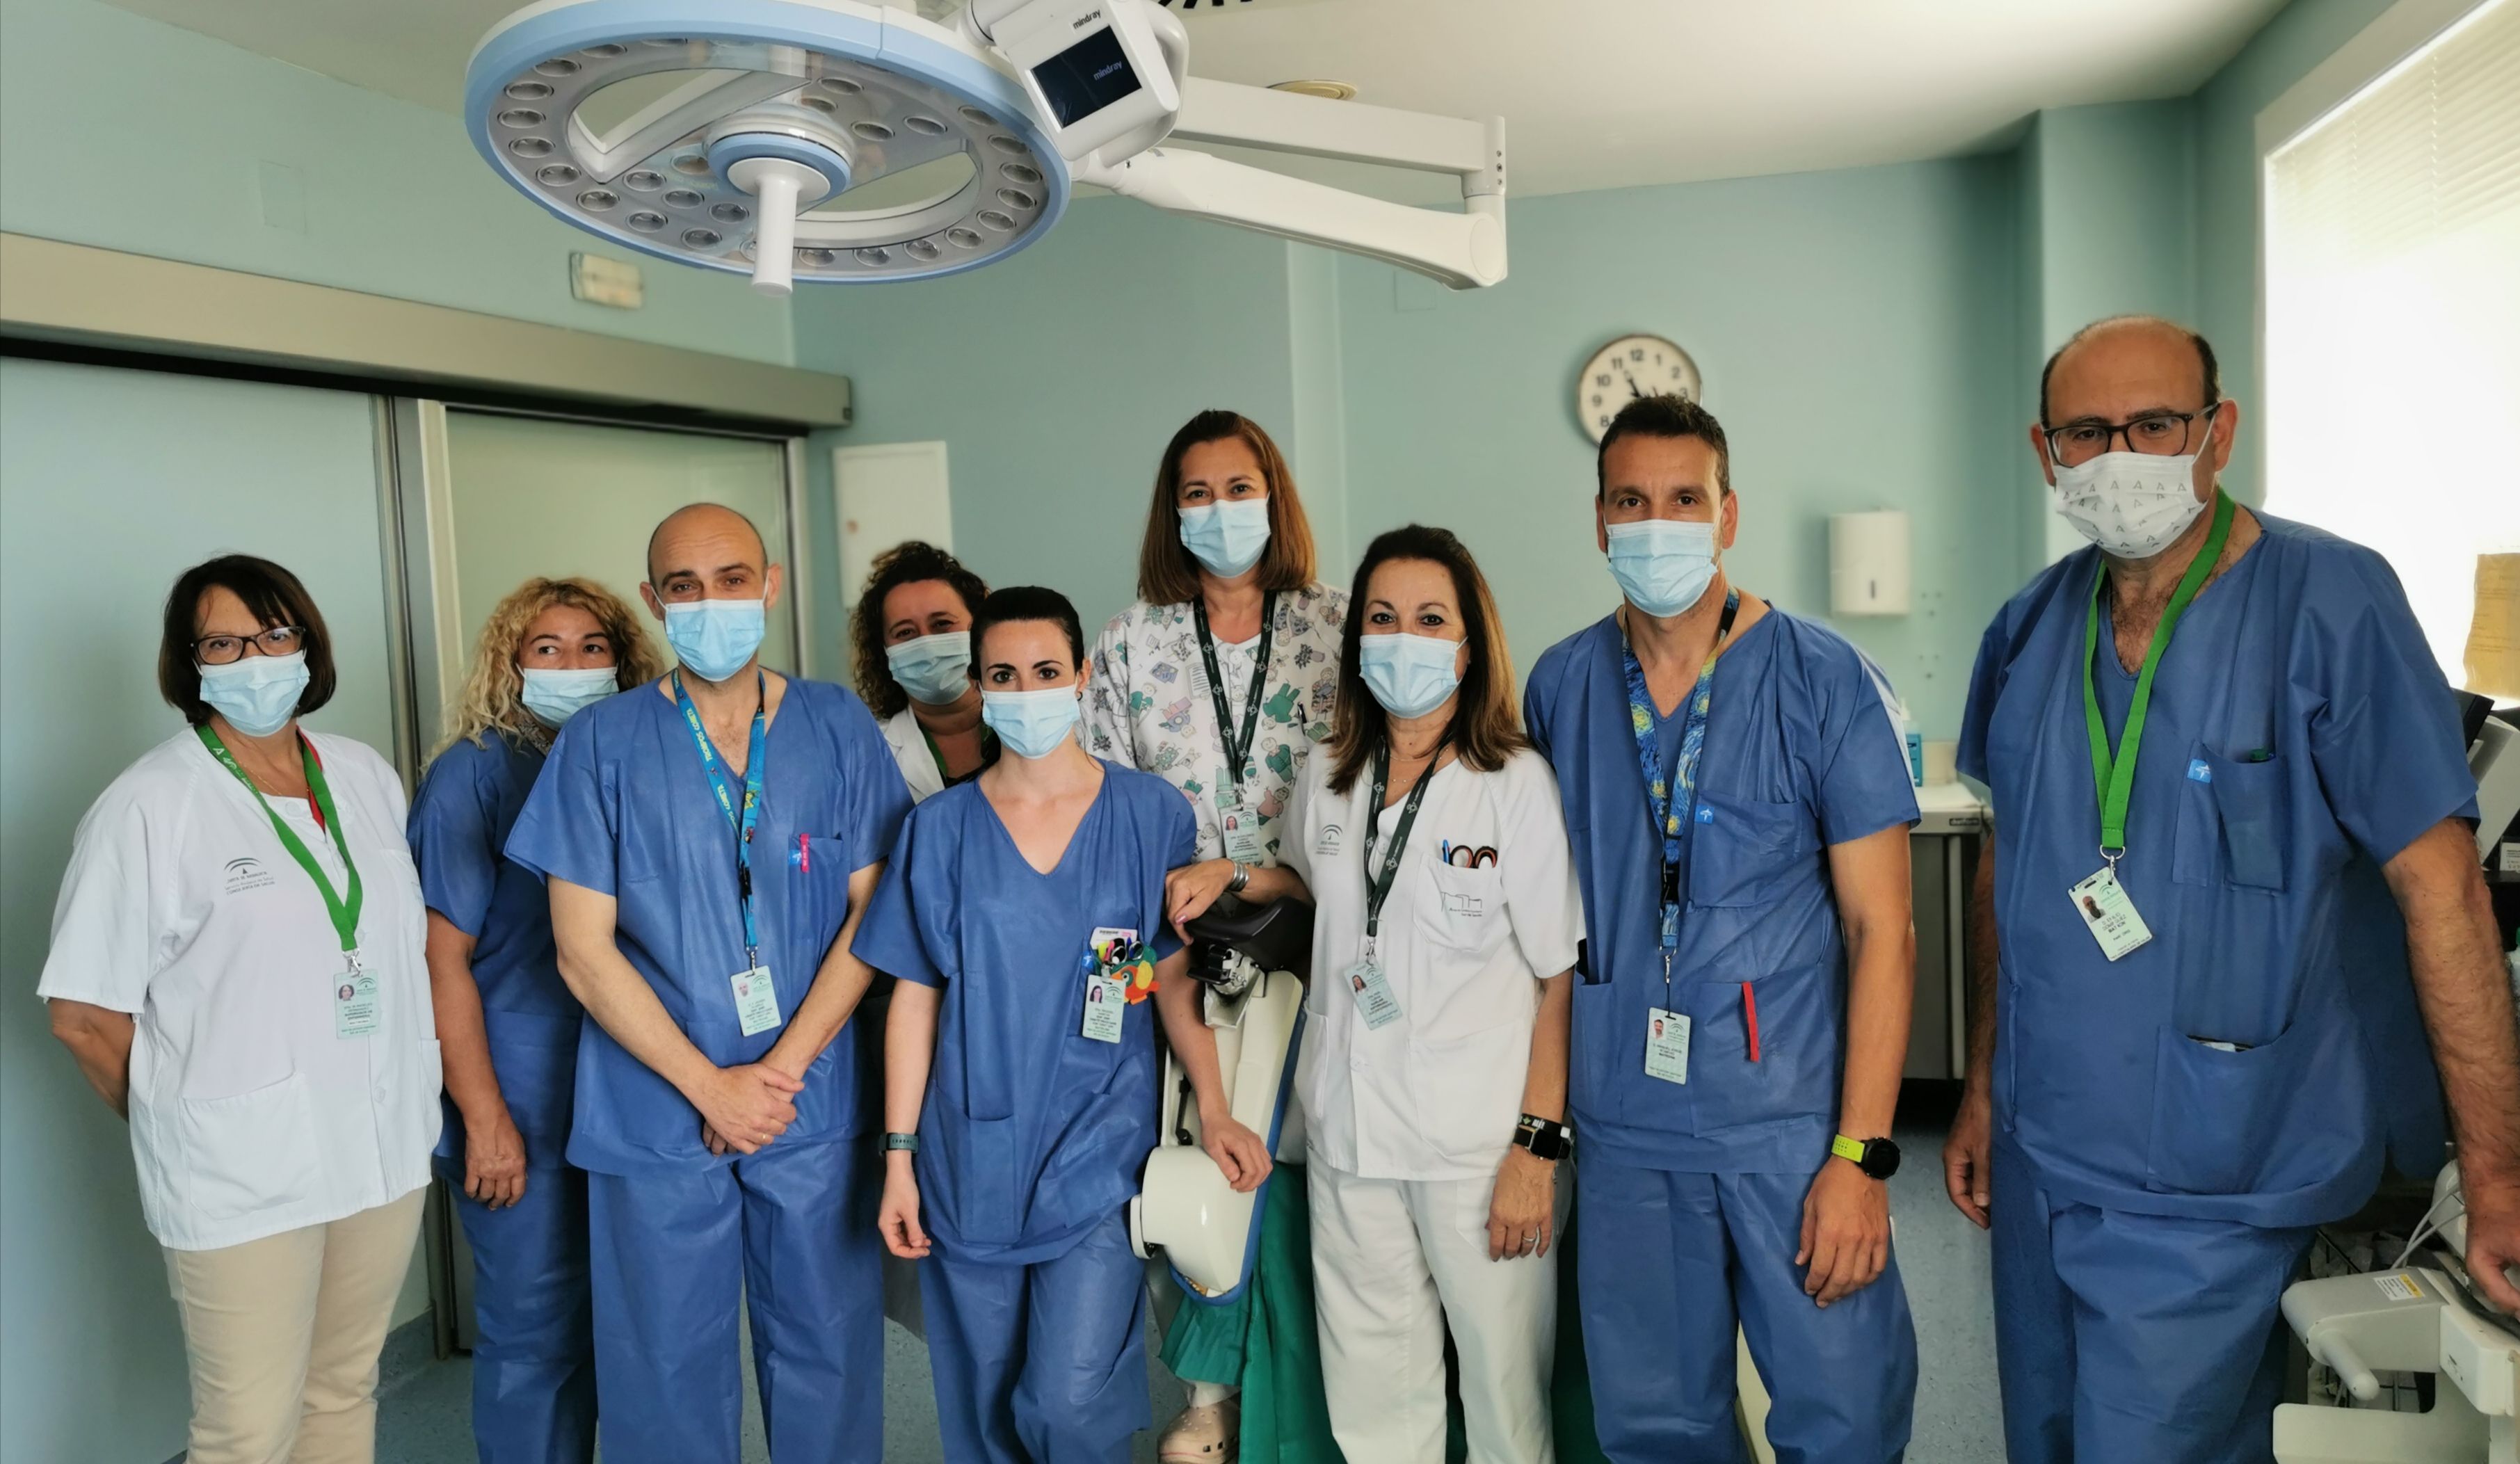 La Federación Española de Matronas selecciona al Hospital de Valme por sus Buenas Prácticas en la Atención de las Cesáreas durante la pandemia